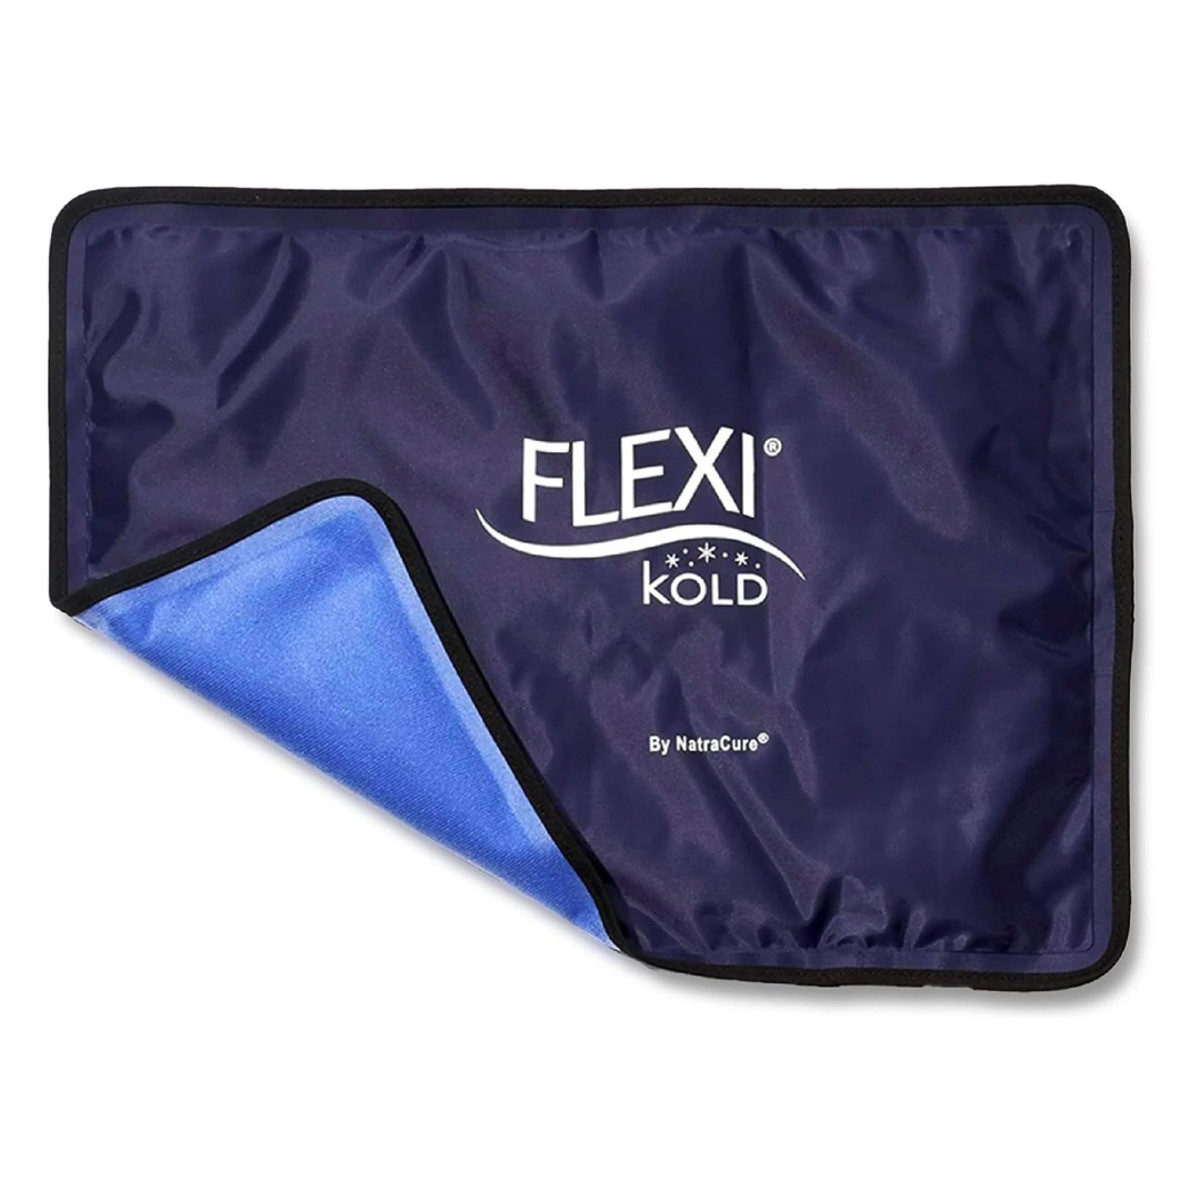 https://www.mensjournal.com/.image/t_share/MjAzMDI0MjEwMDM2MDA4MTE4/flexihold-reusable-ice-pack-gift.jpg